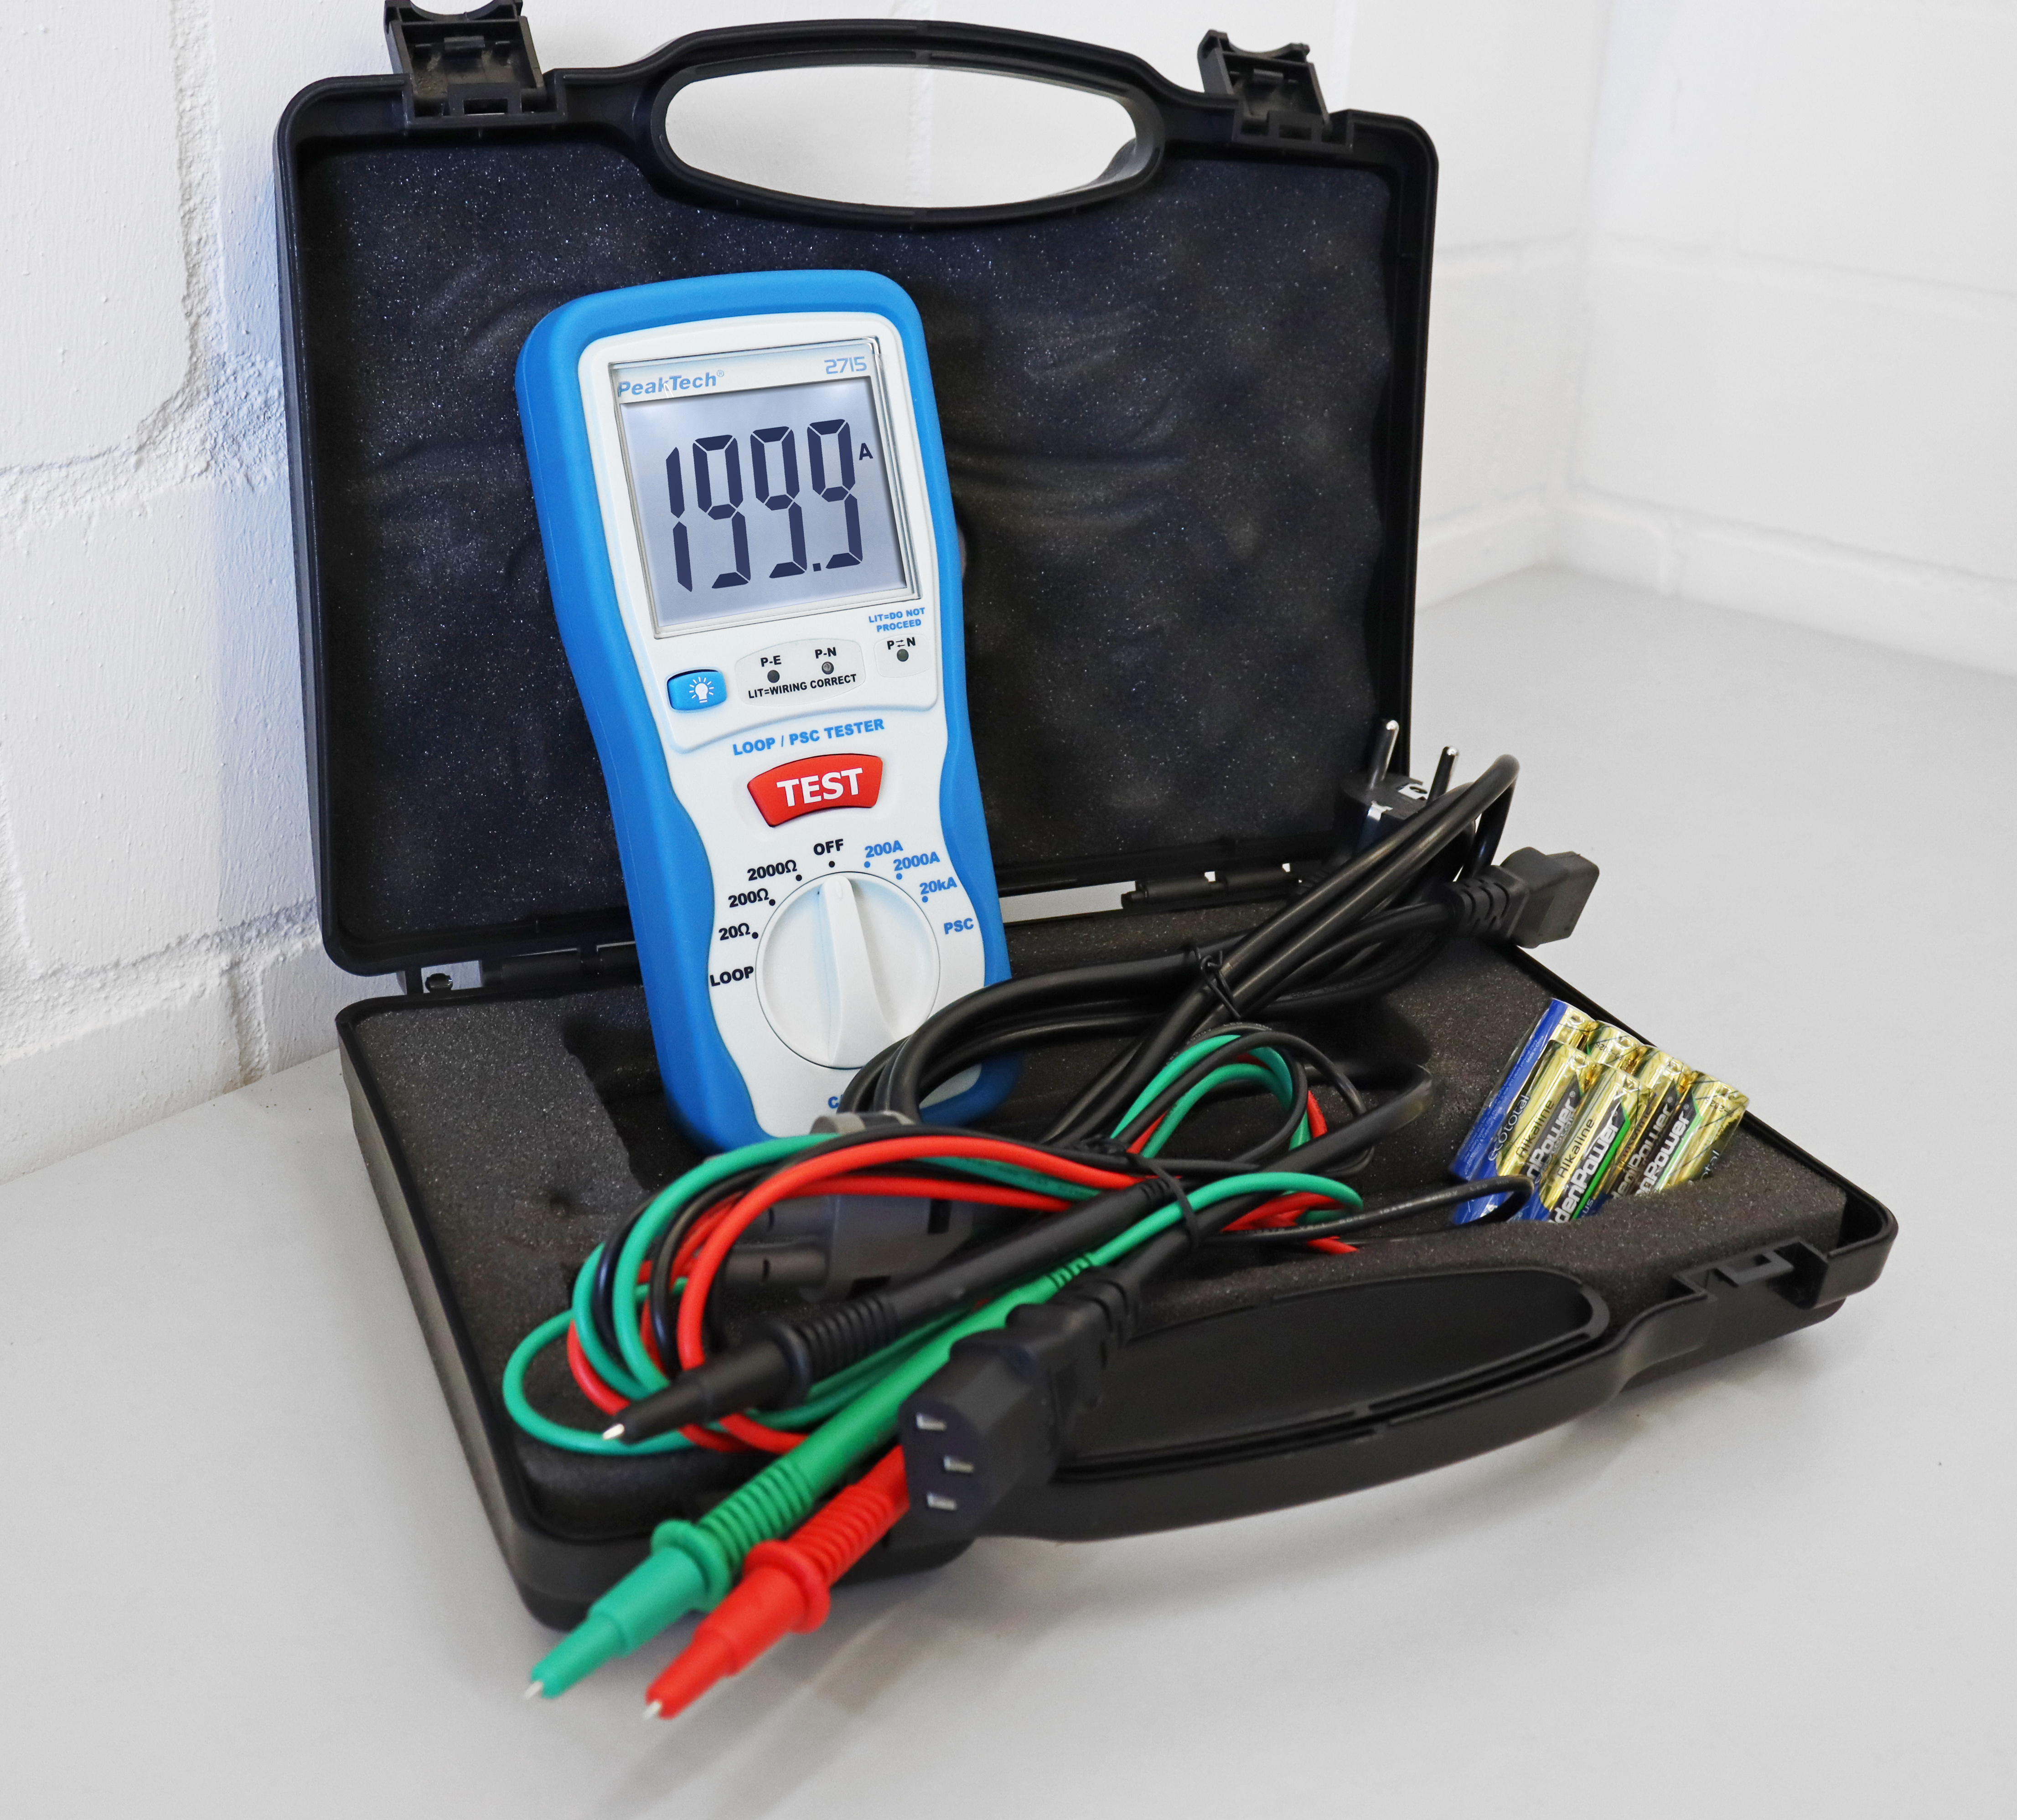 «PeakTech® P 2715» Digital LOOP / PSC loop impedance tester